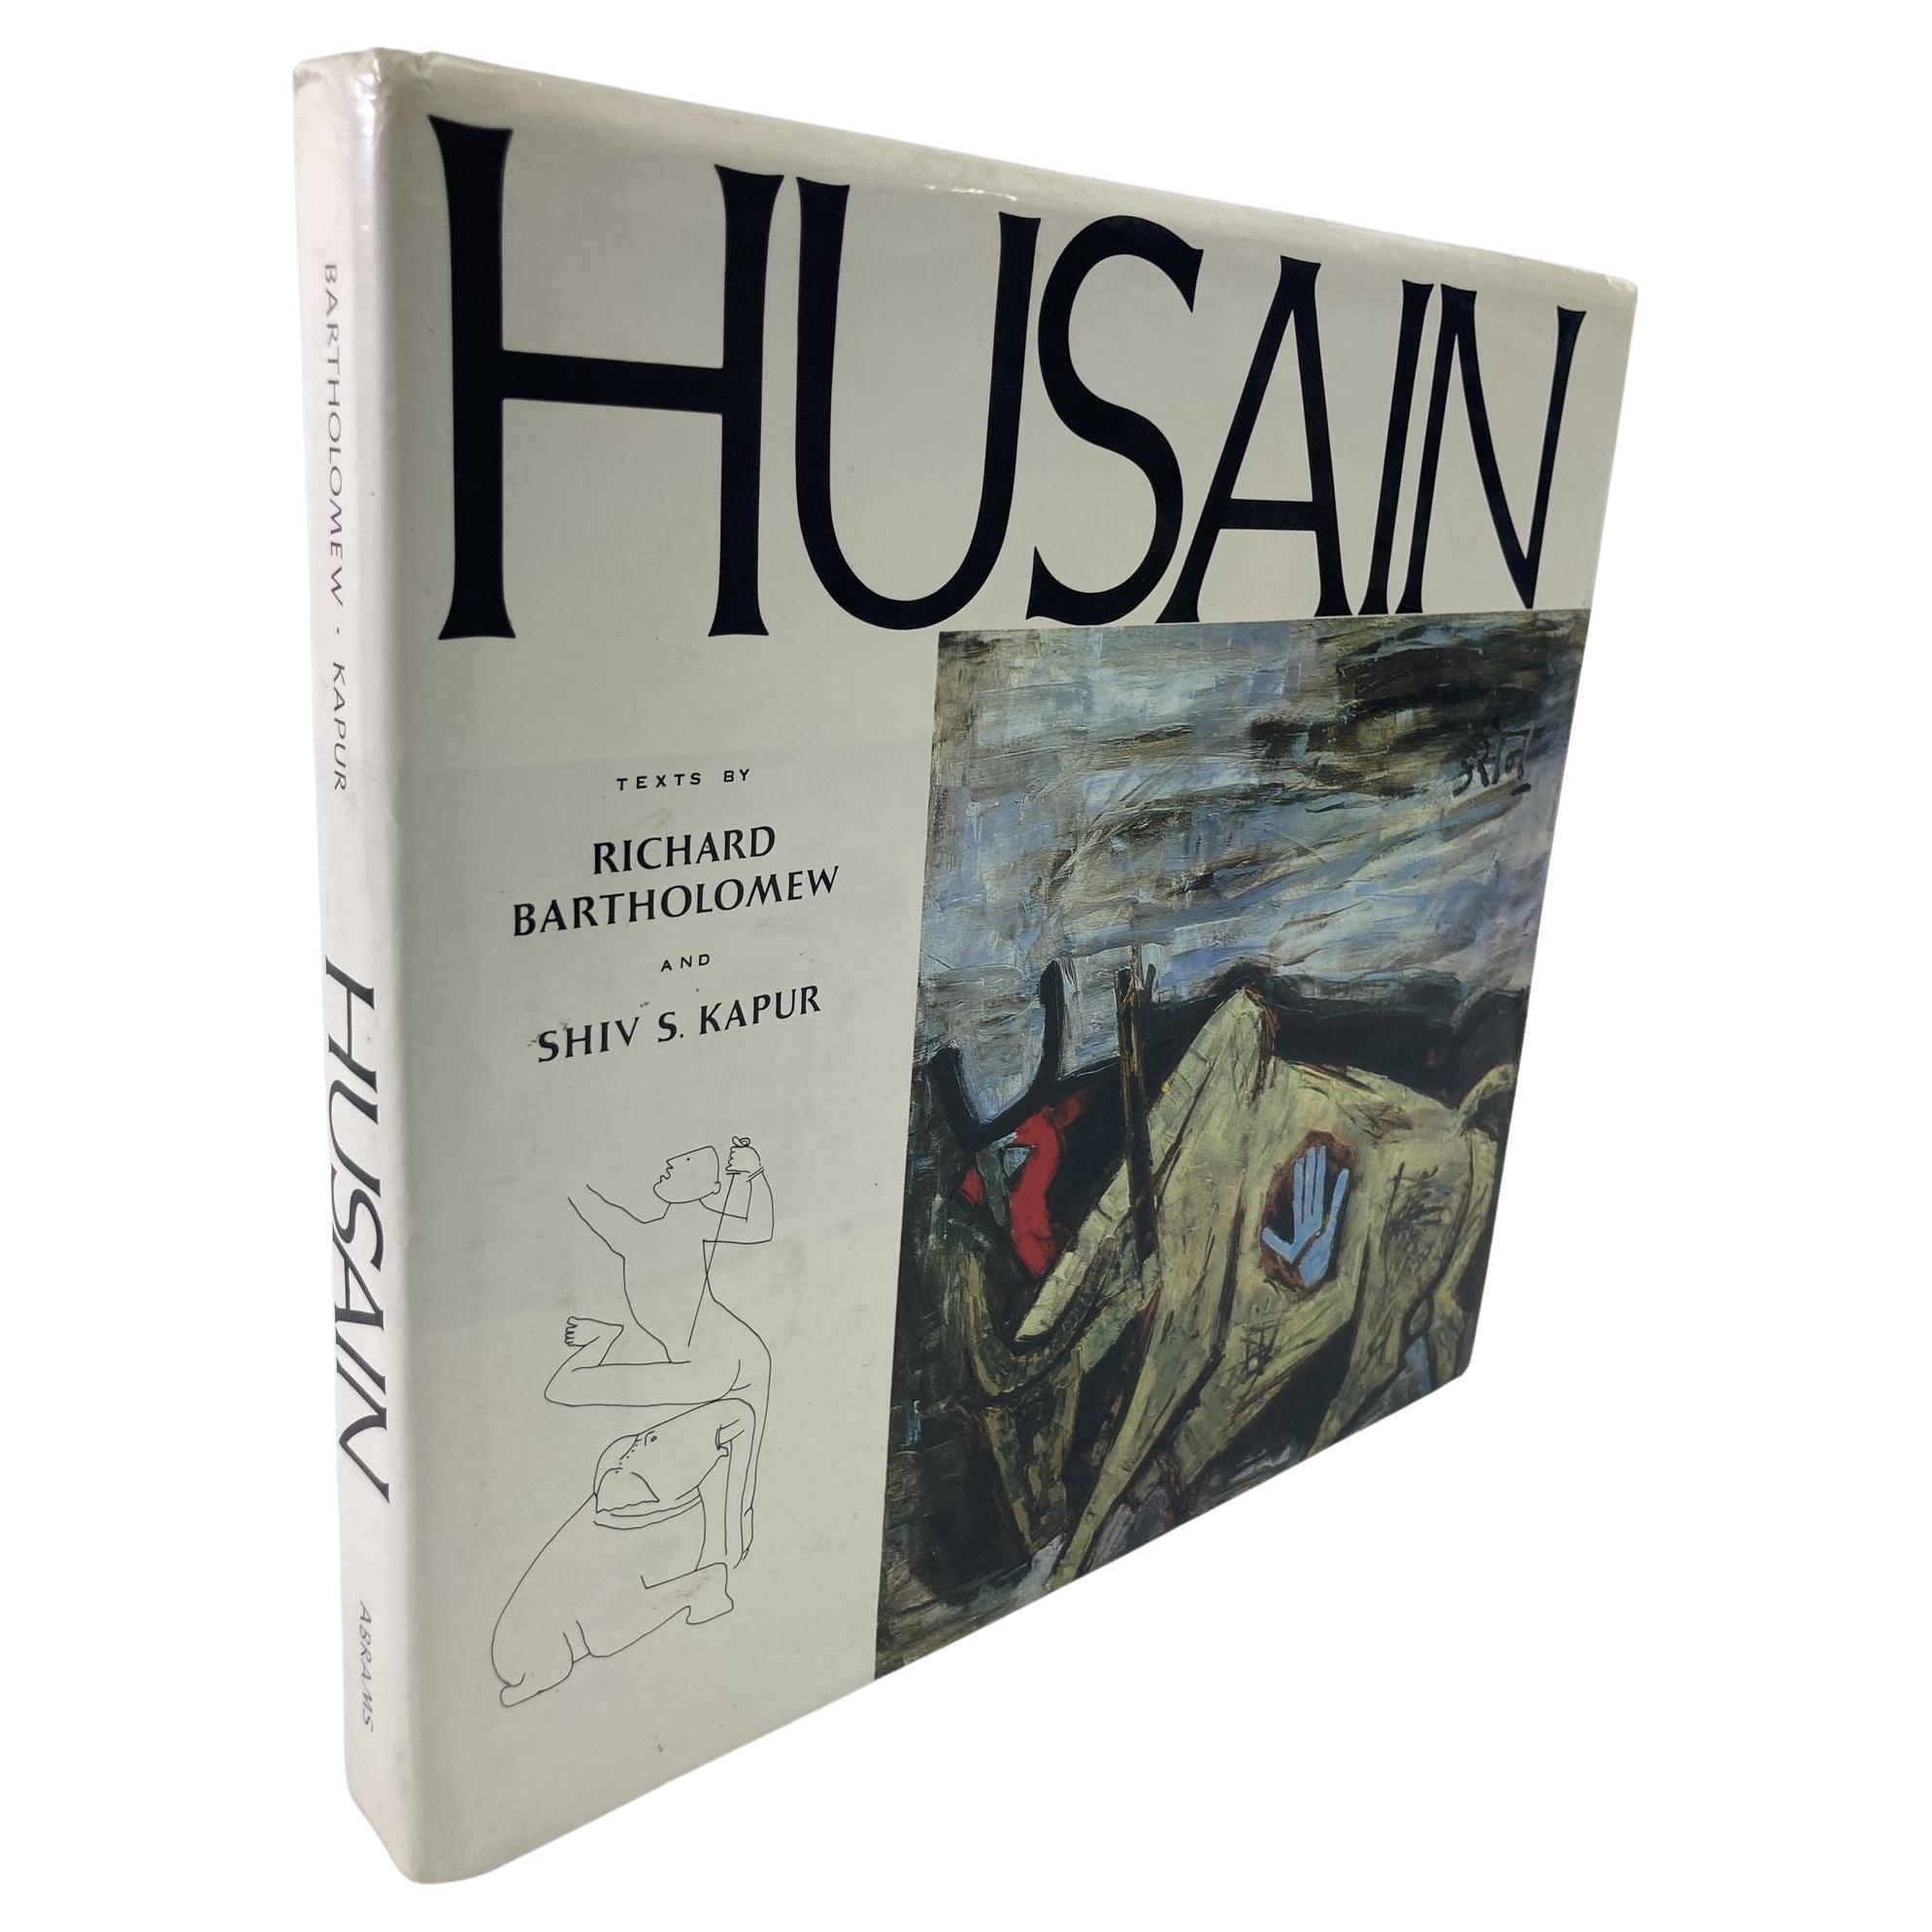 Husain by Maqbul Fida Husain, Richard Bartholomew, Shiv S. Kapur, H. N. Abrams